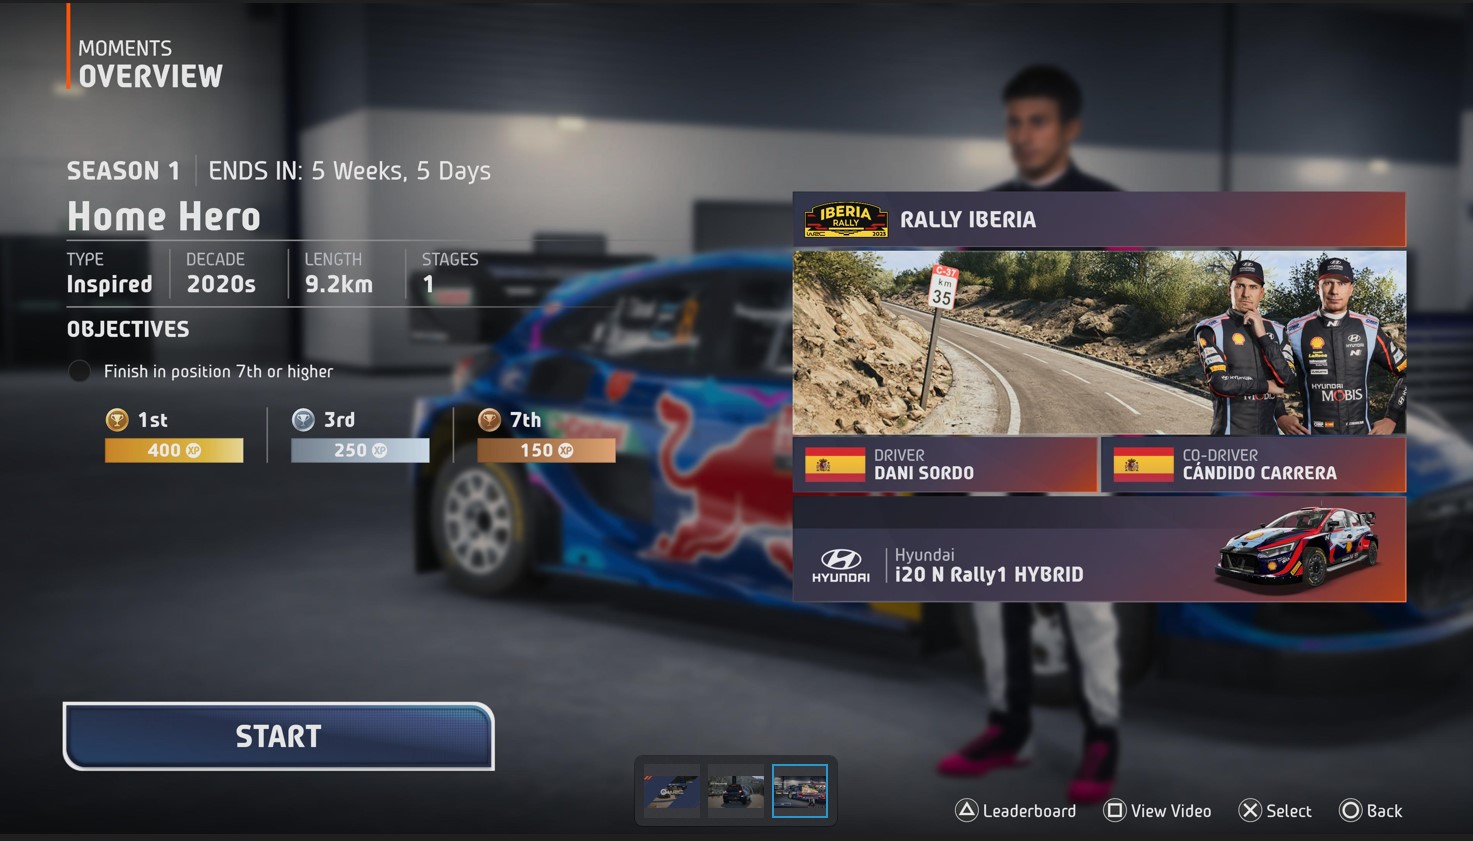 Modo Moments permite reviver momentos icônicos da história do WRC